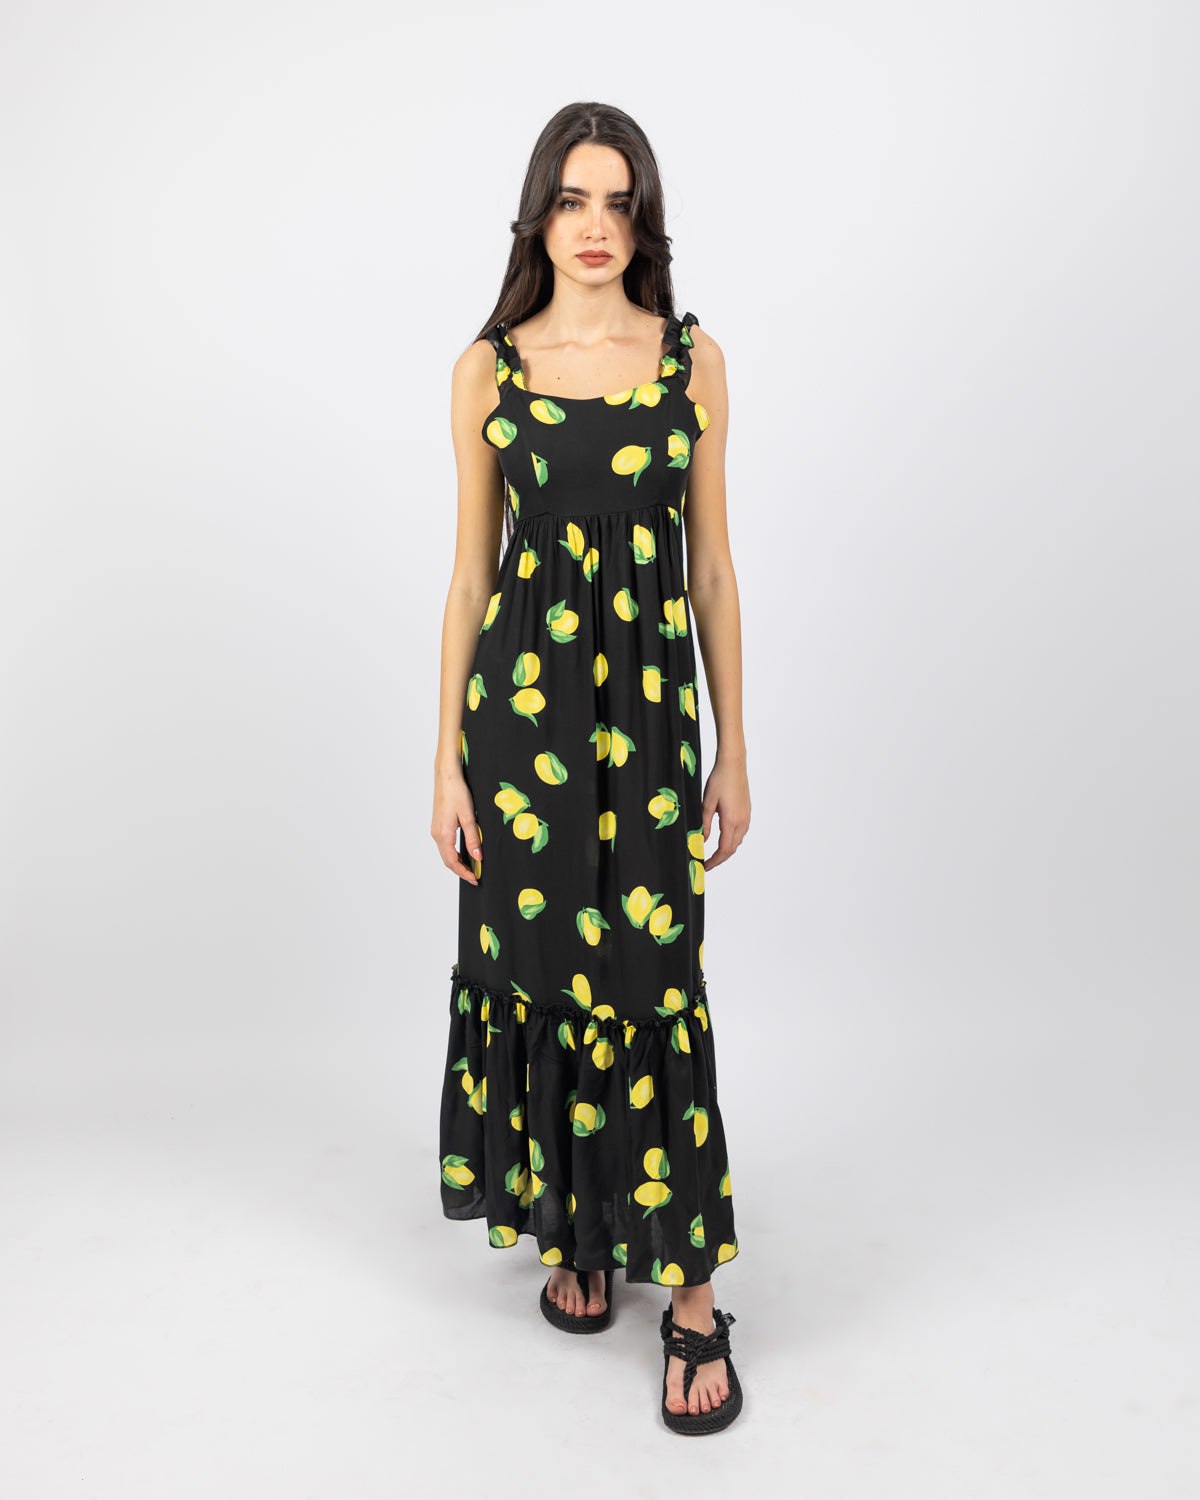 Lemon Print Long Dress For Women - Black